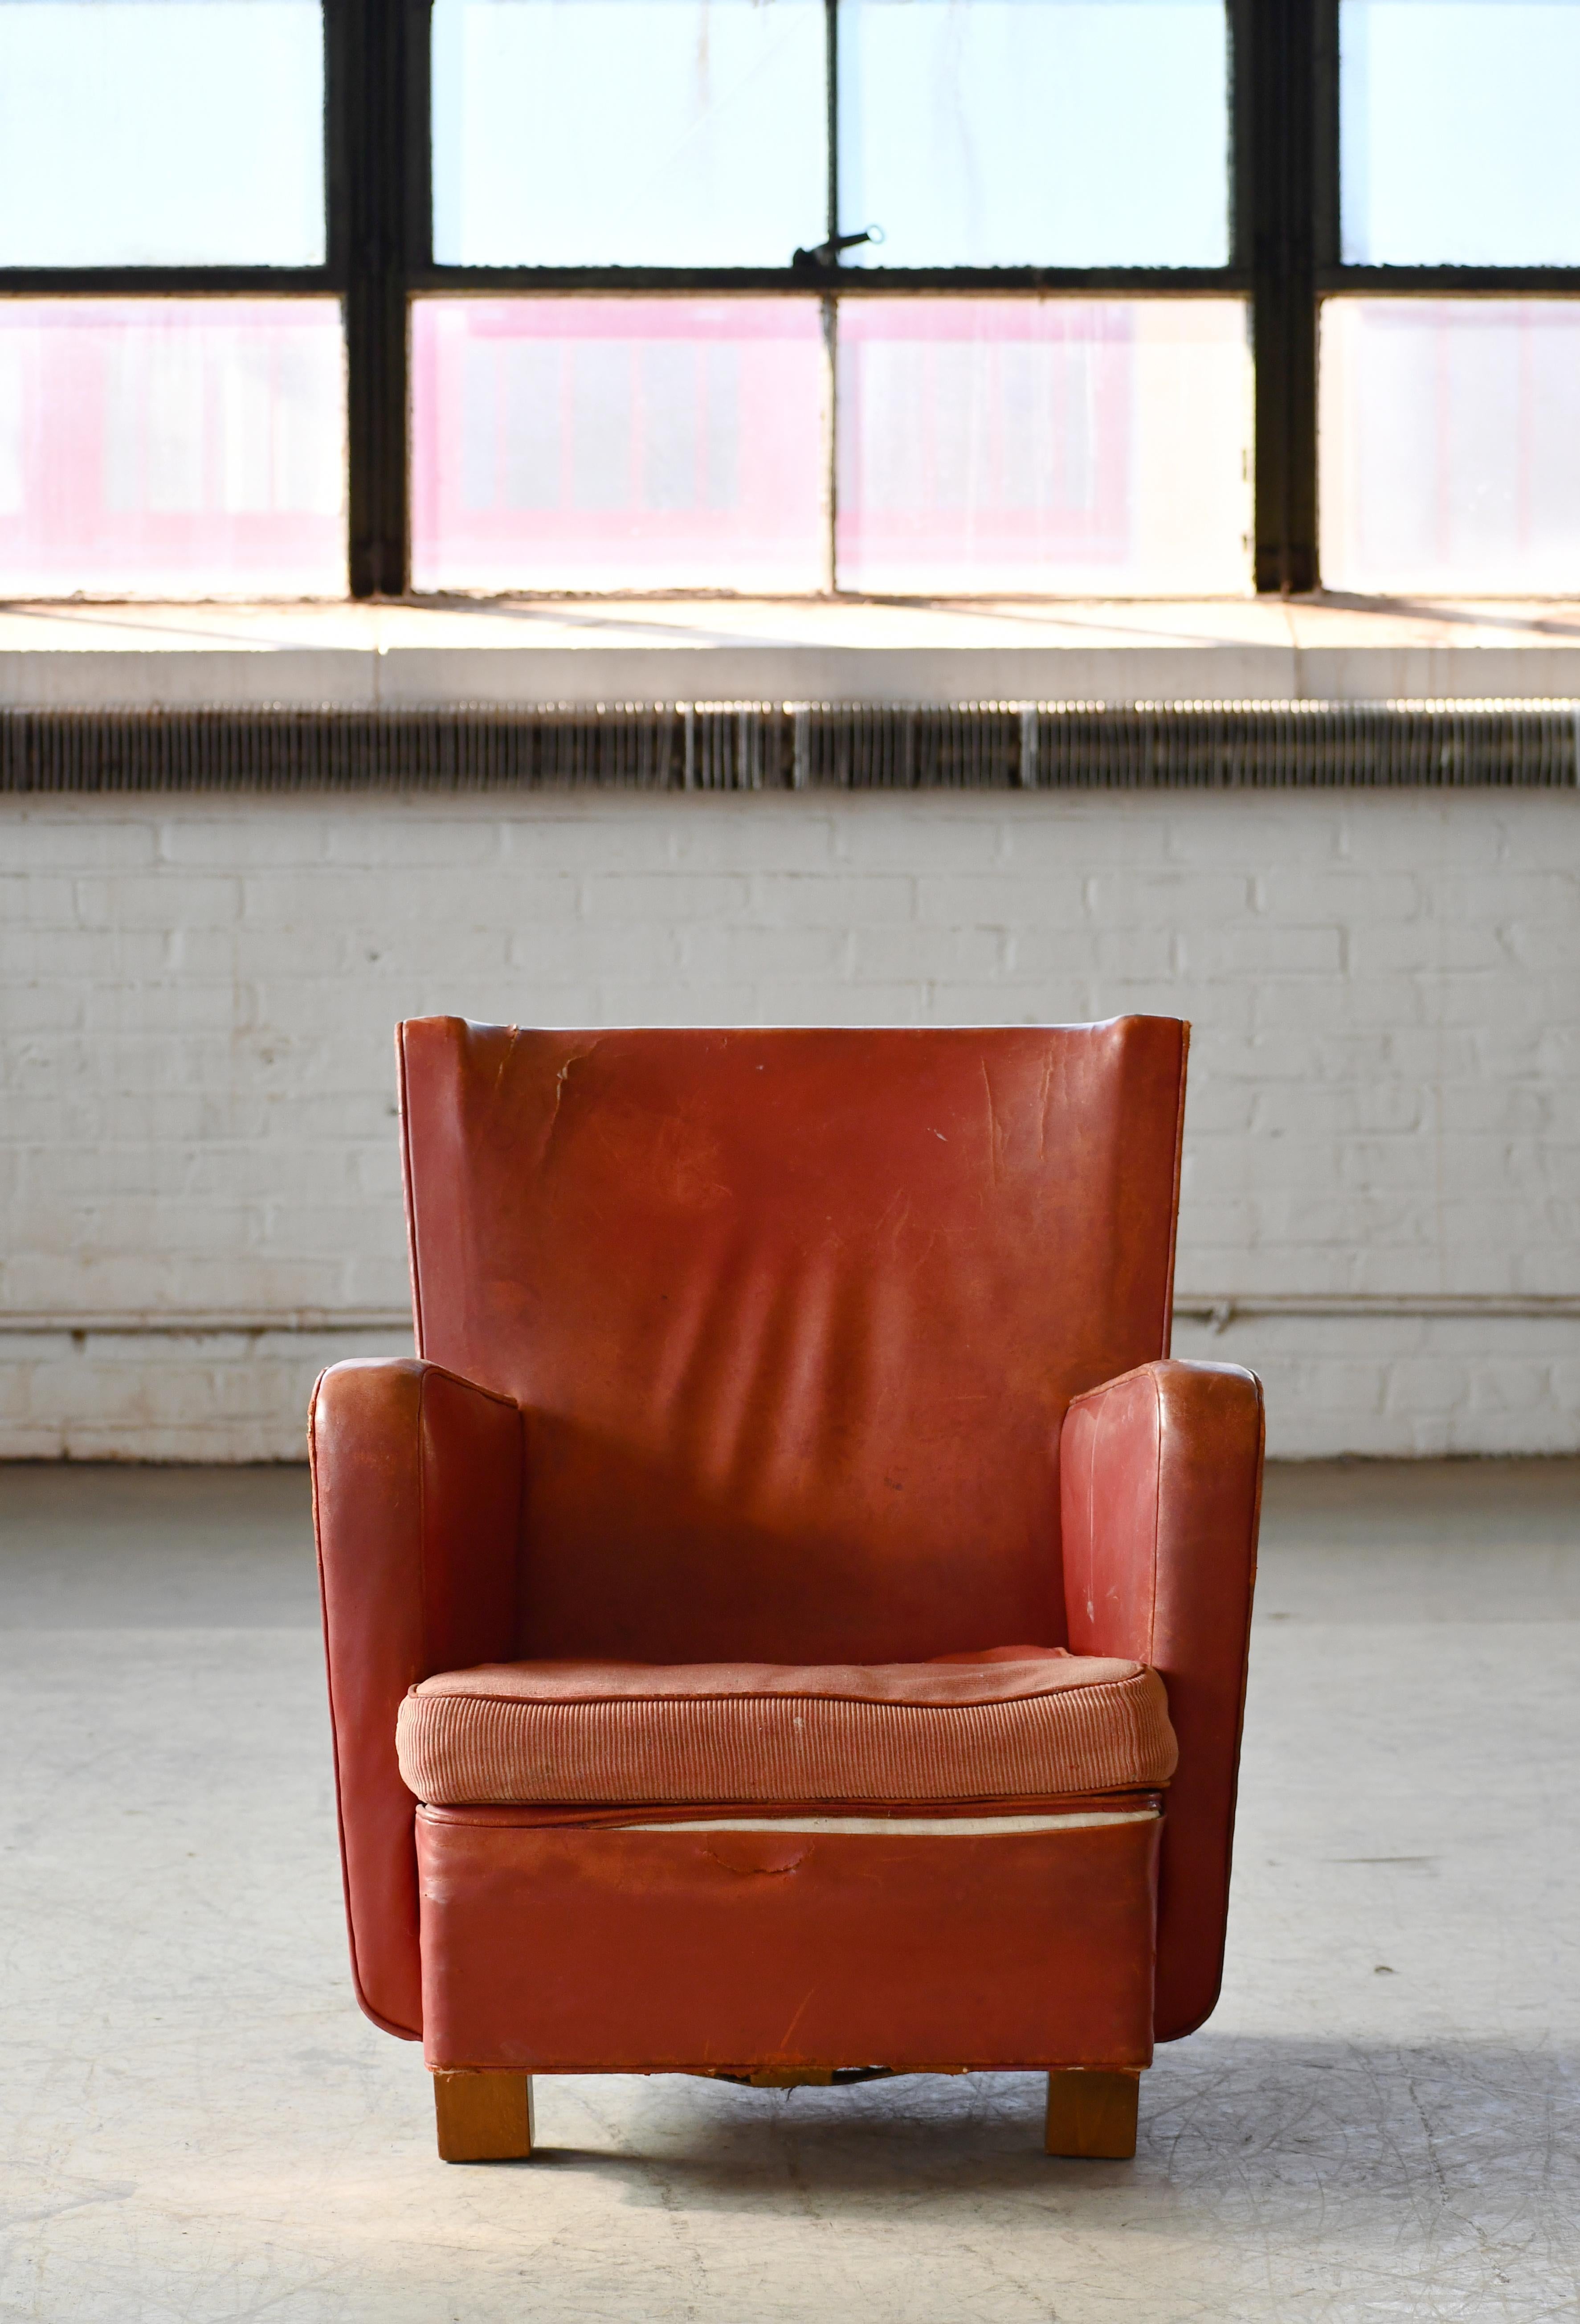 Fantastique chaise longue danoise fabriquée par un fabricant inconnu vers la fin des années 1930. Les chaises ont un aspect très avant-gardiste et moderne, avec des coussins non fixés sur l'assise et des ressorts hélicoïdaux, ce qui n'était pas la